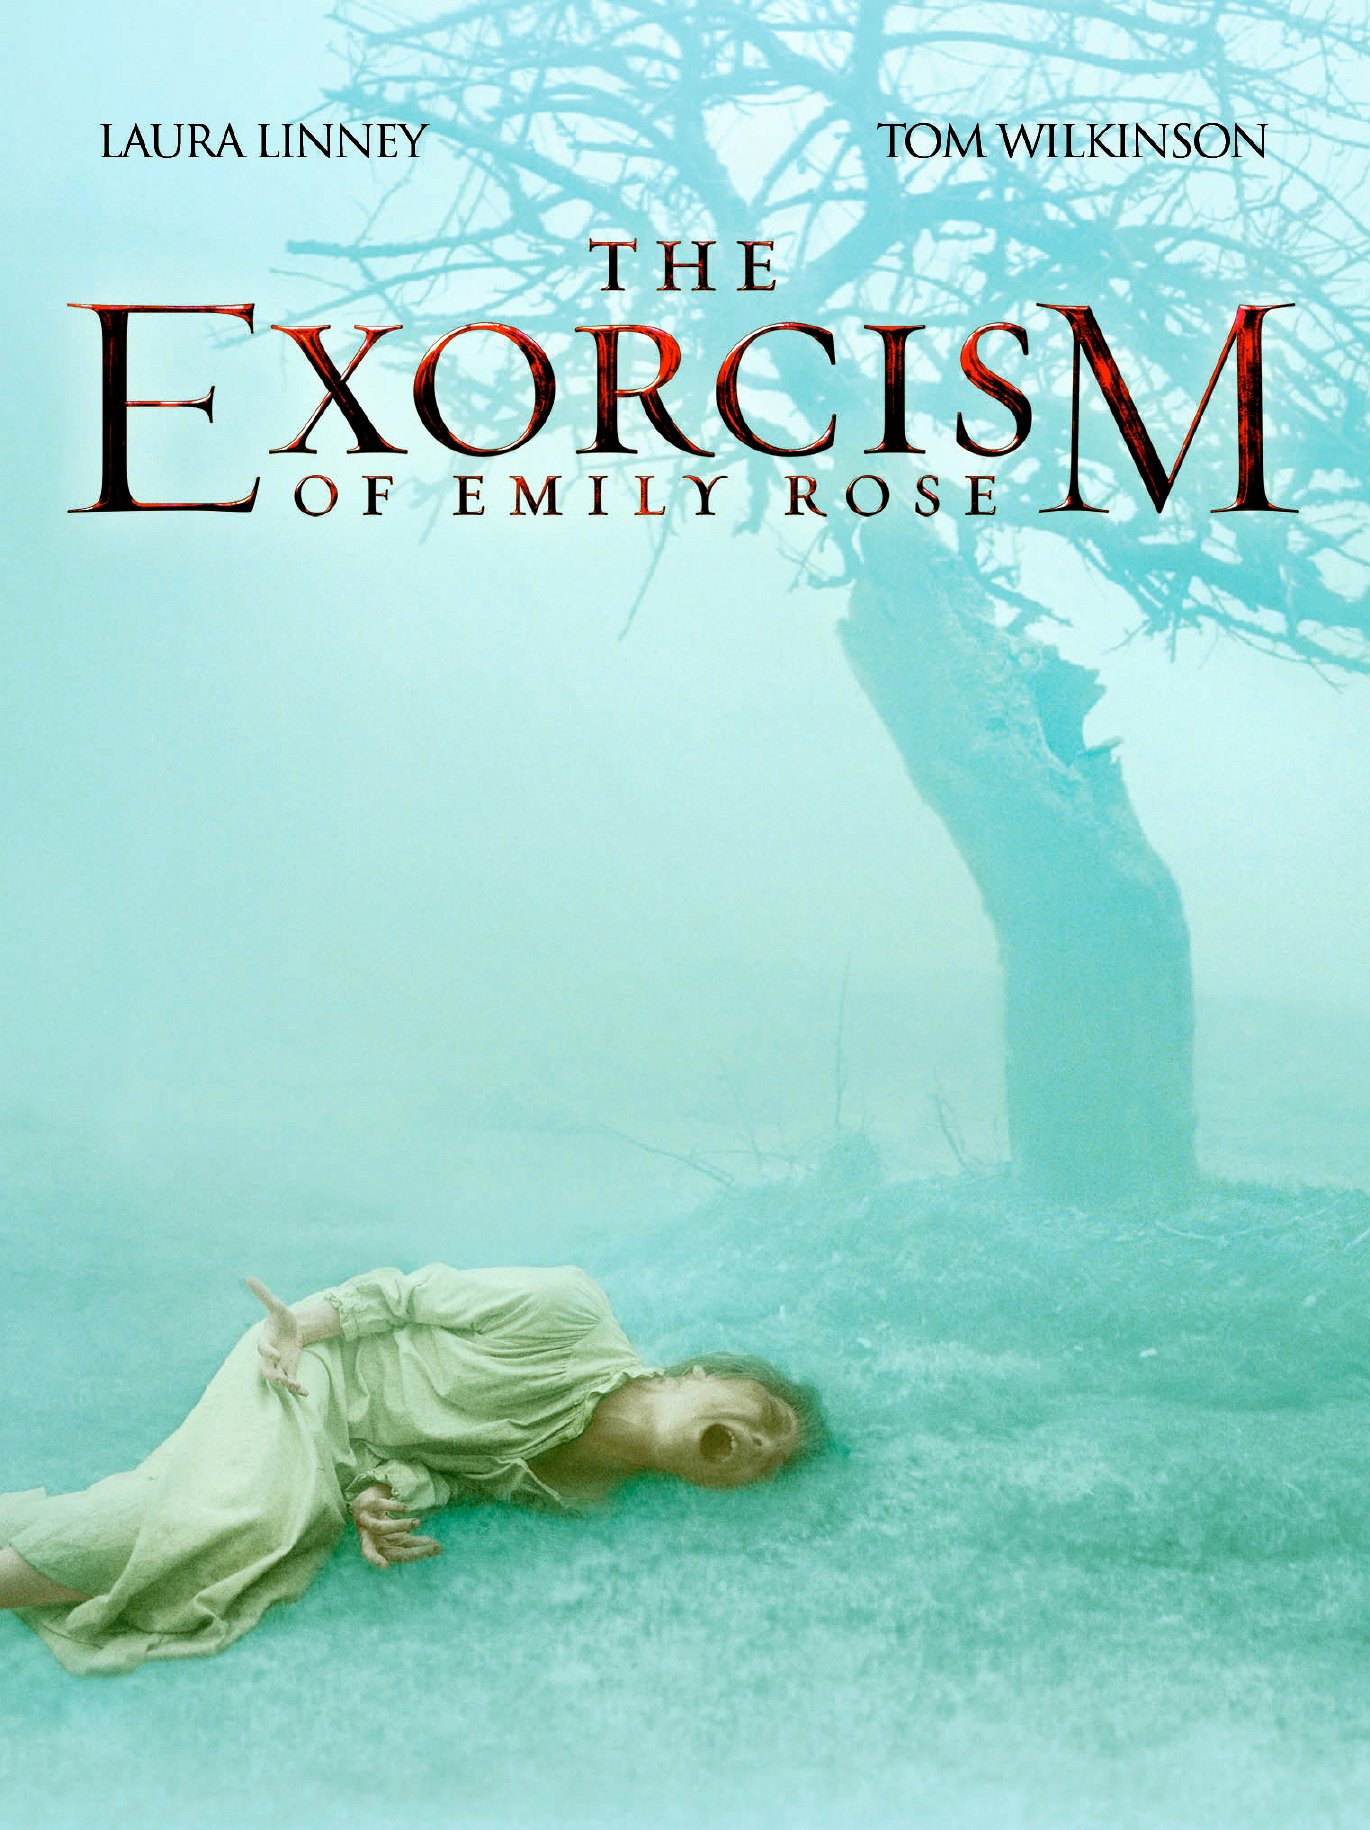 ეშმაკის განდევნა ემილი როუზისგან / The Exorcism of Emily Rose ქართულად